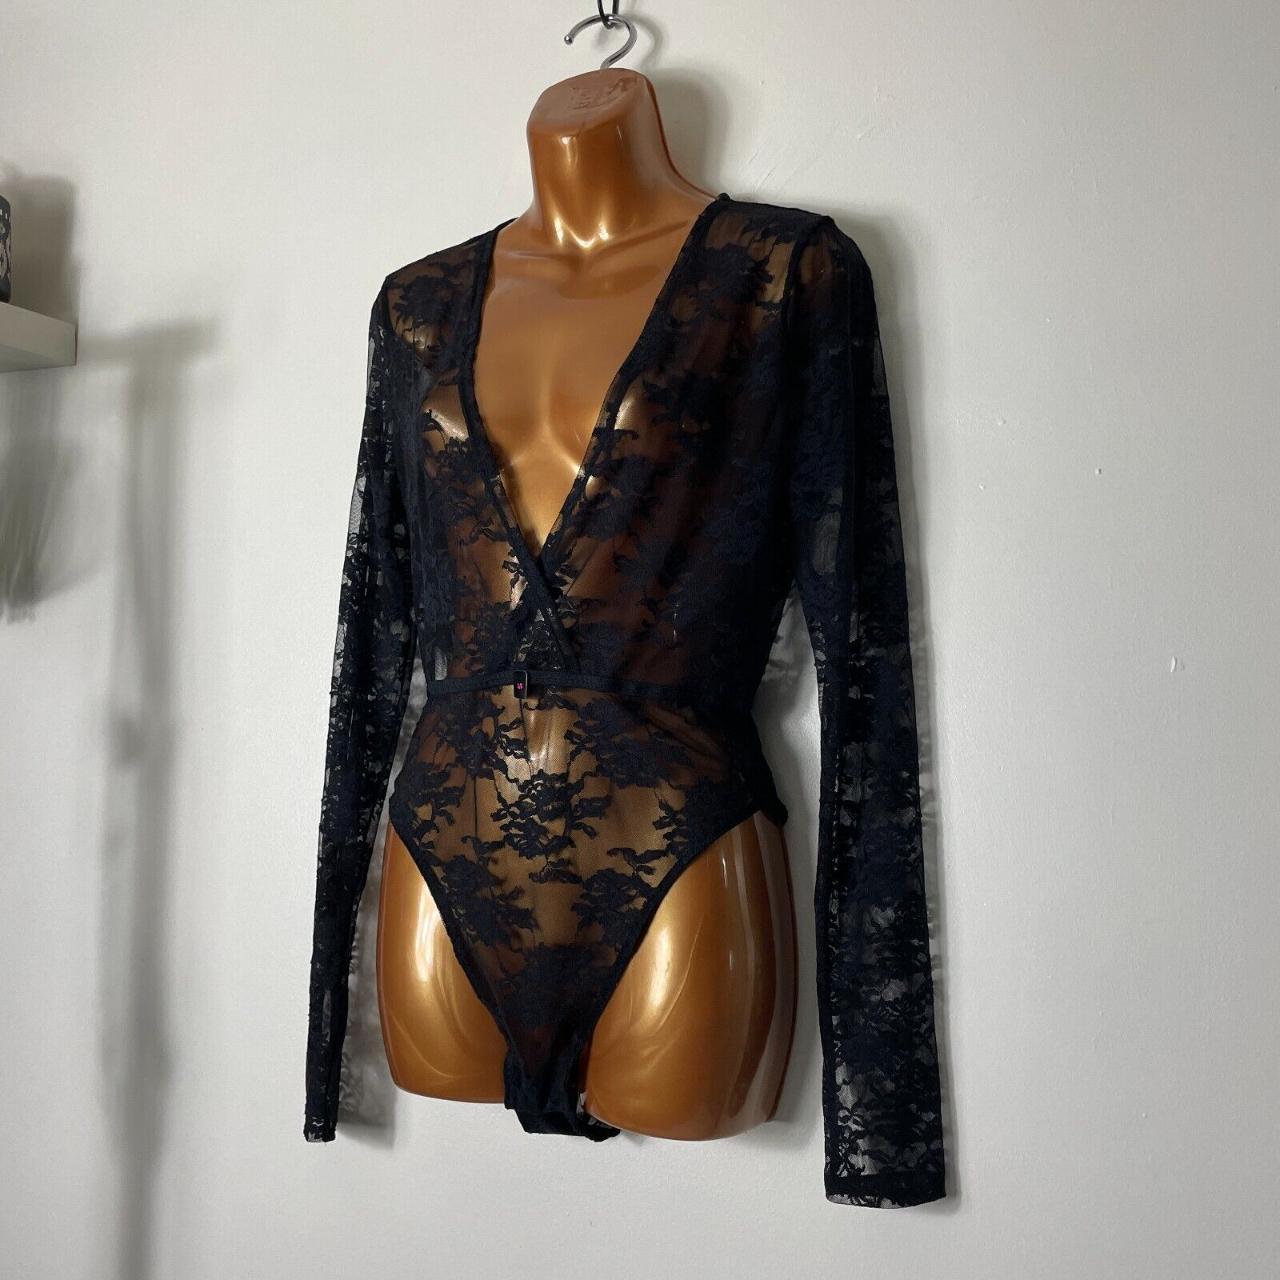 Sexy Black Bodysuit - Long Sleeve Bodysuit - Sheer Lace Bodysuit